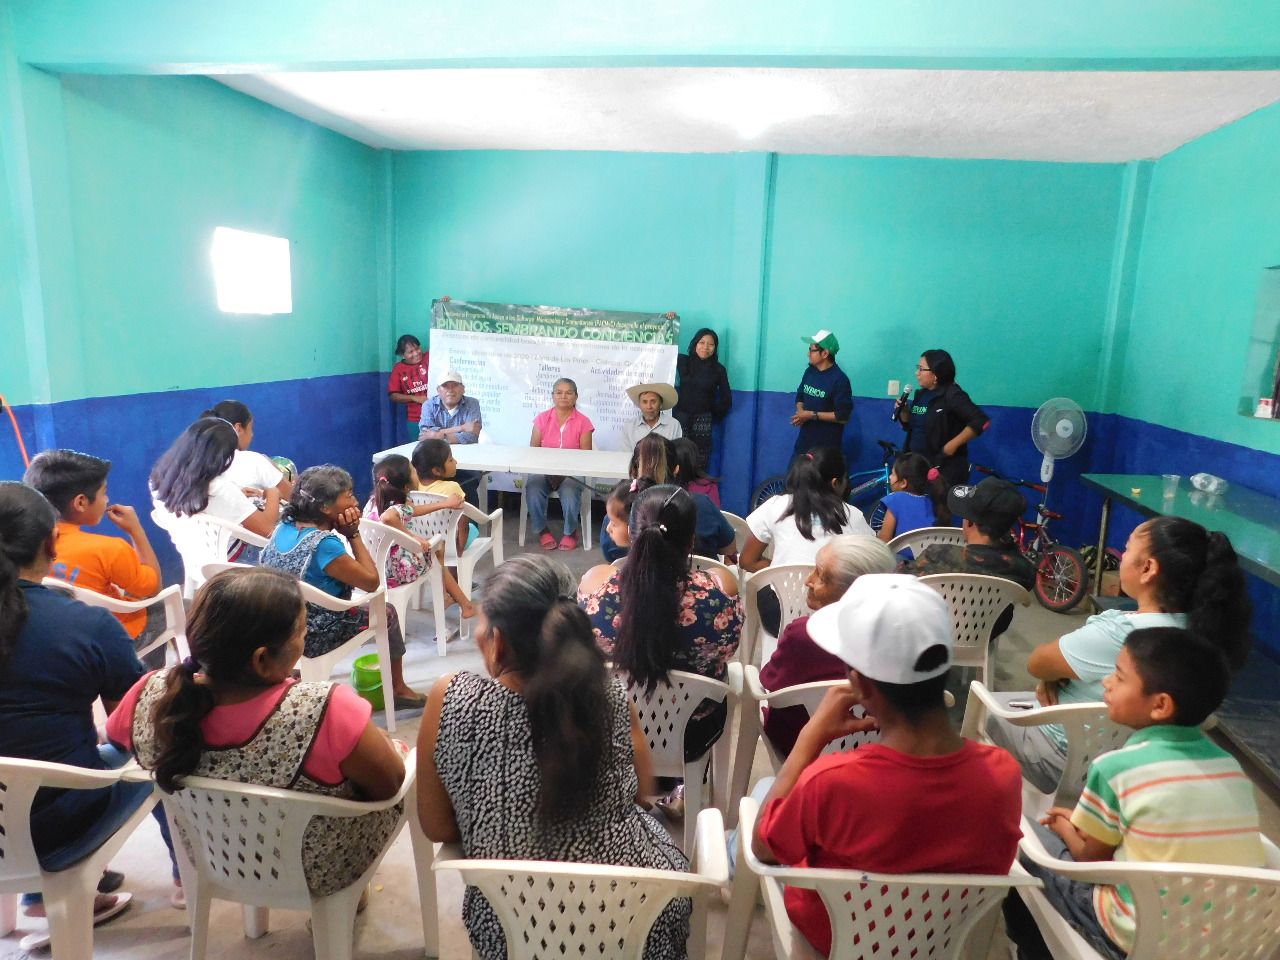 Denuncia Colectivo Wiltlán violencia de género y racismo durante taller en Zitlala
